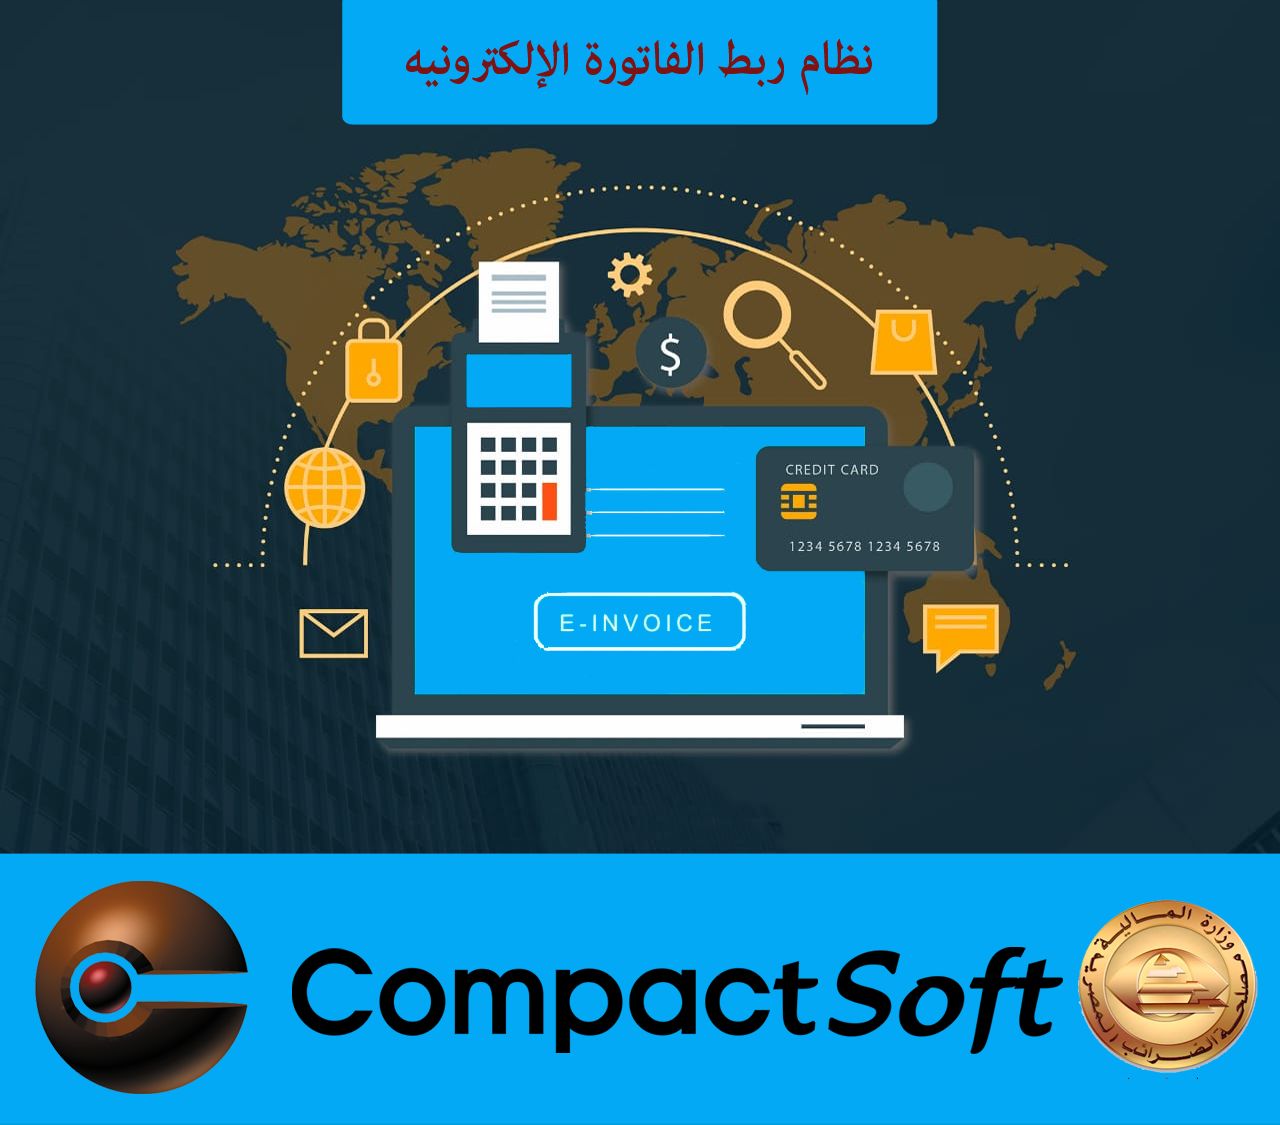 CompactSoft